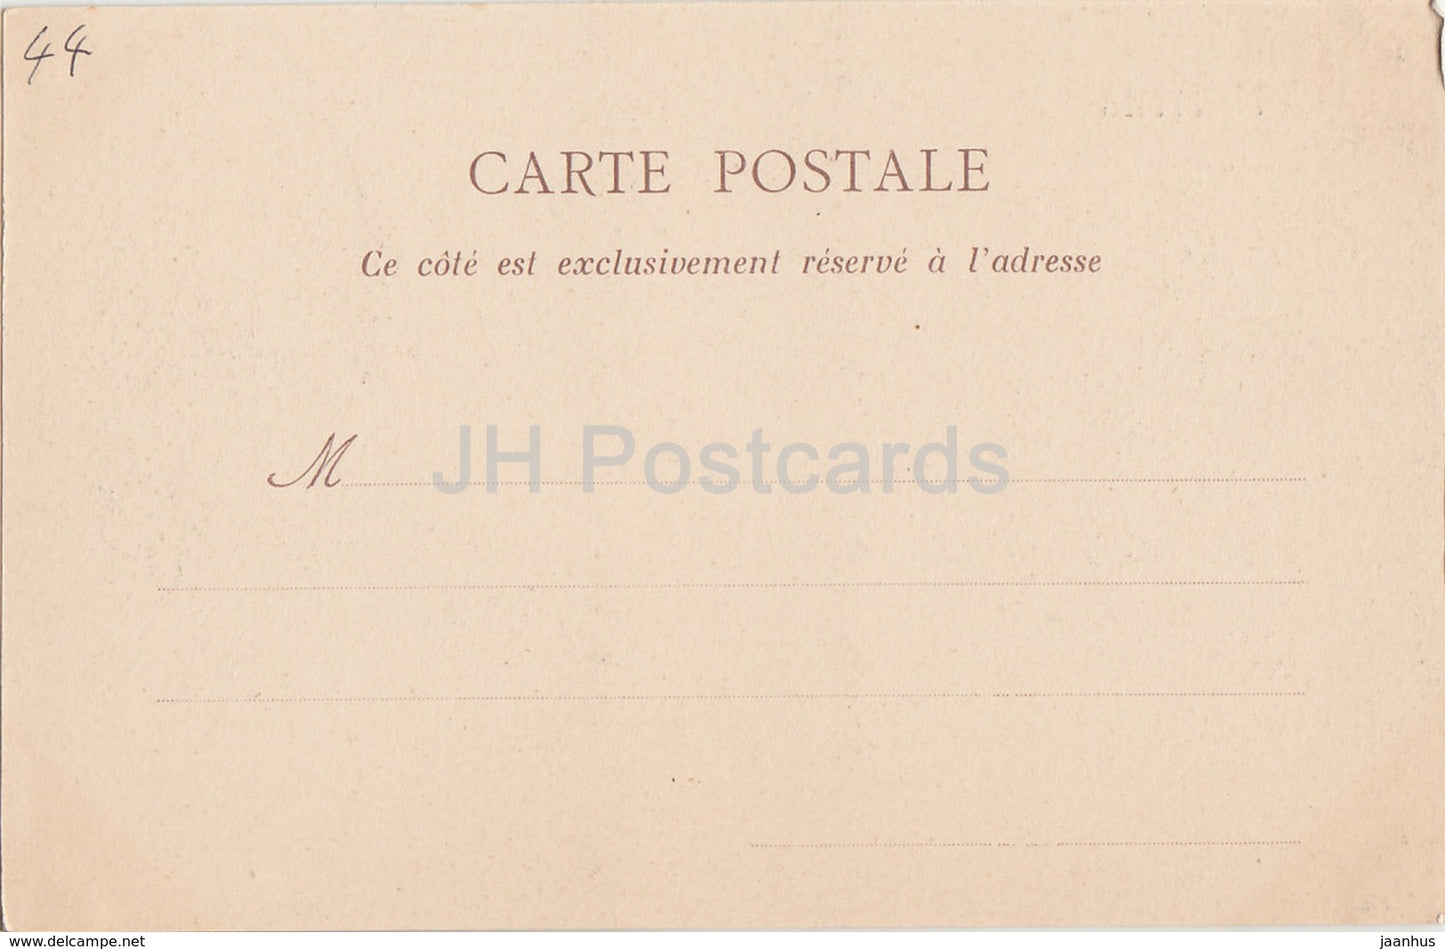 Nantes - Le Château - Entrée principale - château - carte postale ancienne - France - inutilisée